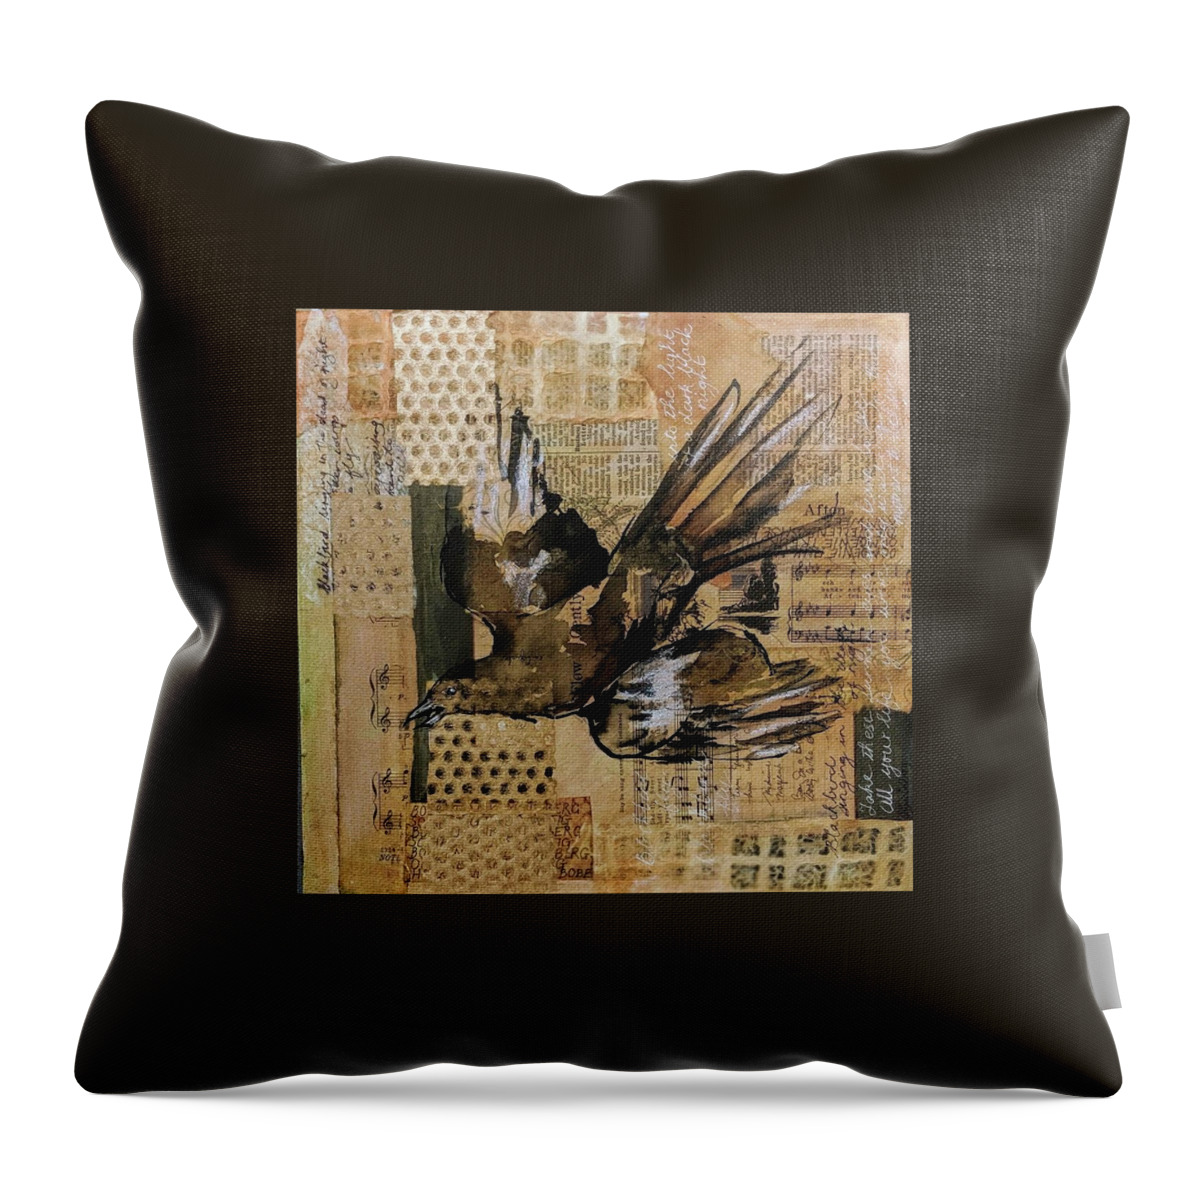 Ink Throw Pillow featuring the mixed media Blackbird in flight by Jillian Goldberg